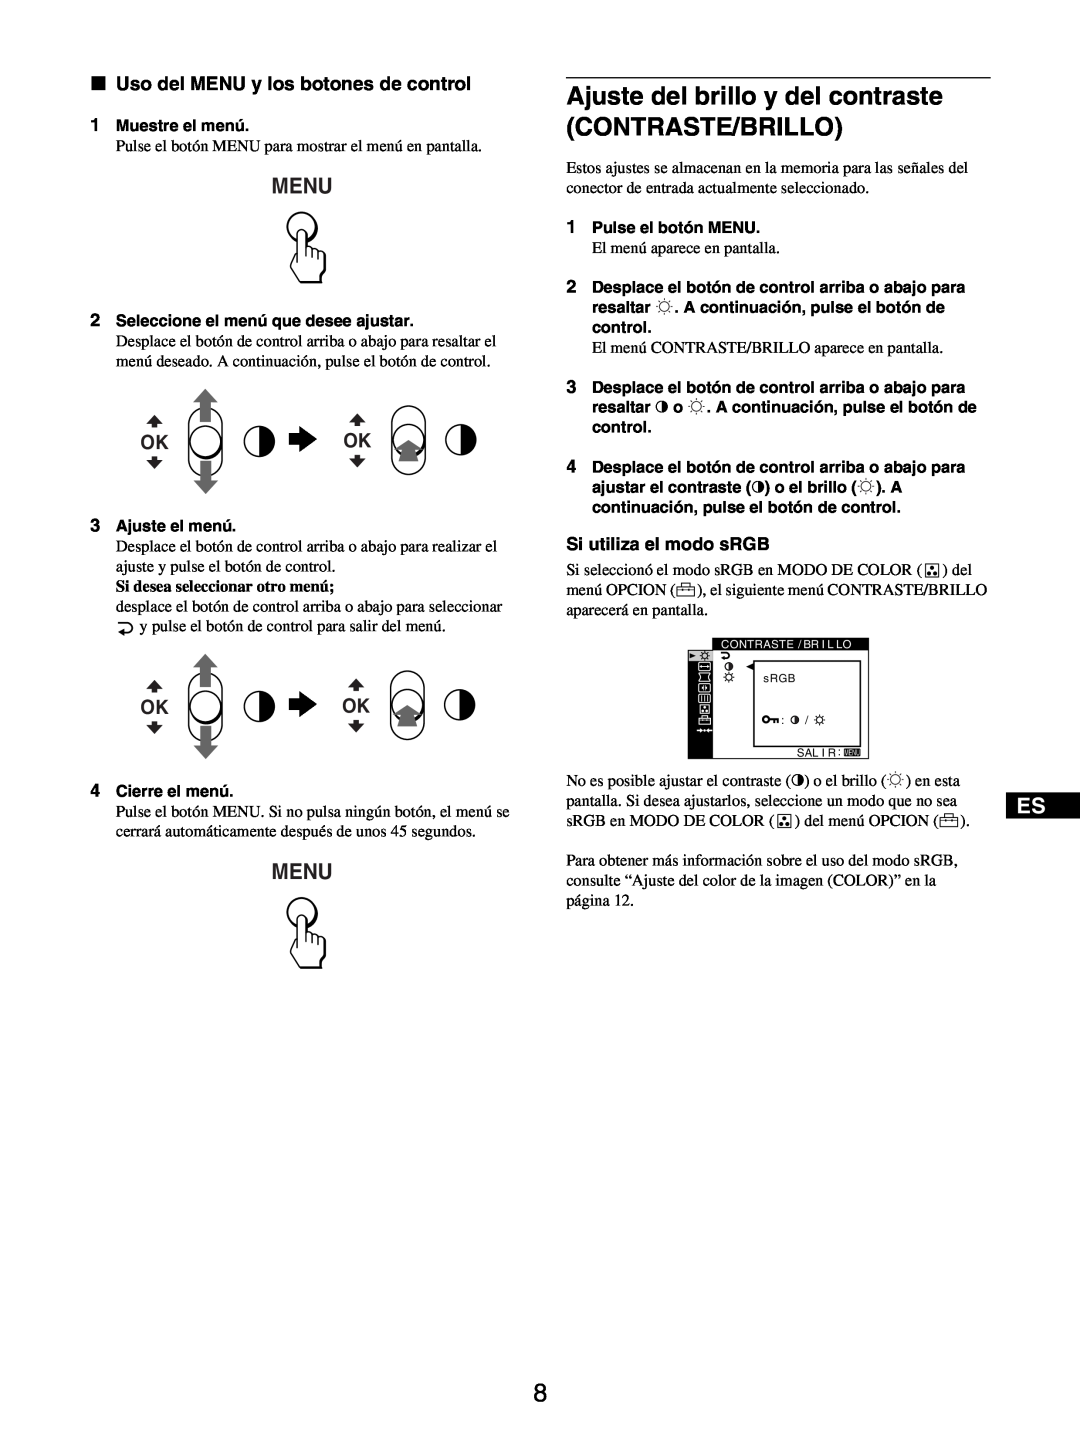 Sony GDM-5510 Ajuste del brillo y del contraste, Contraste/Brillo, Menu, Okok, x Uso del MENU y los botones de control 